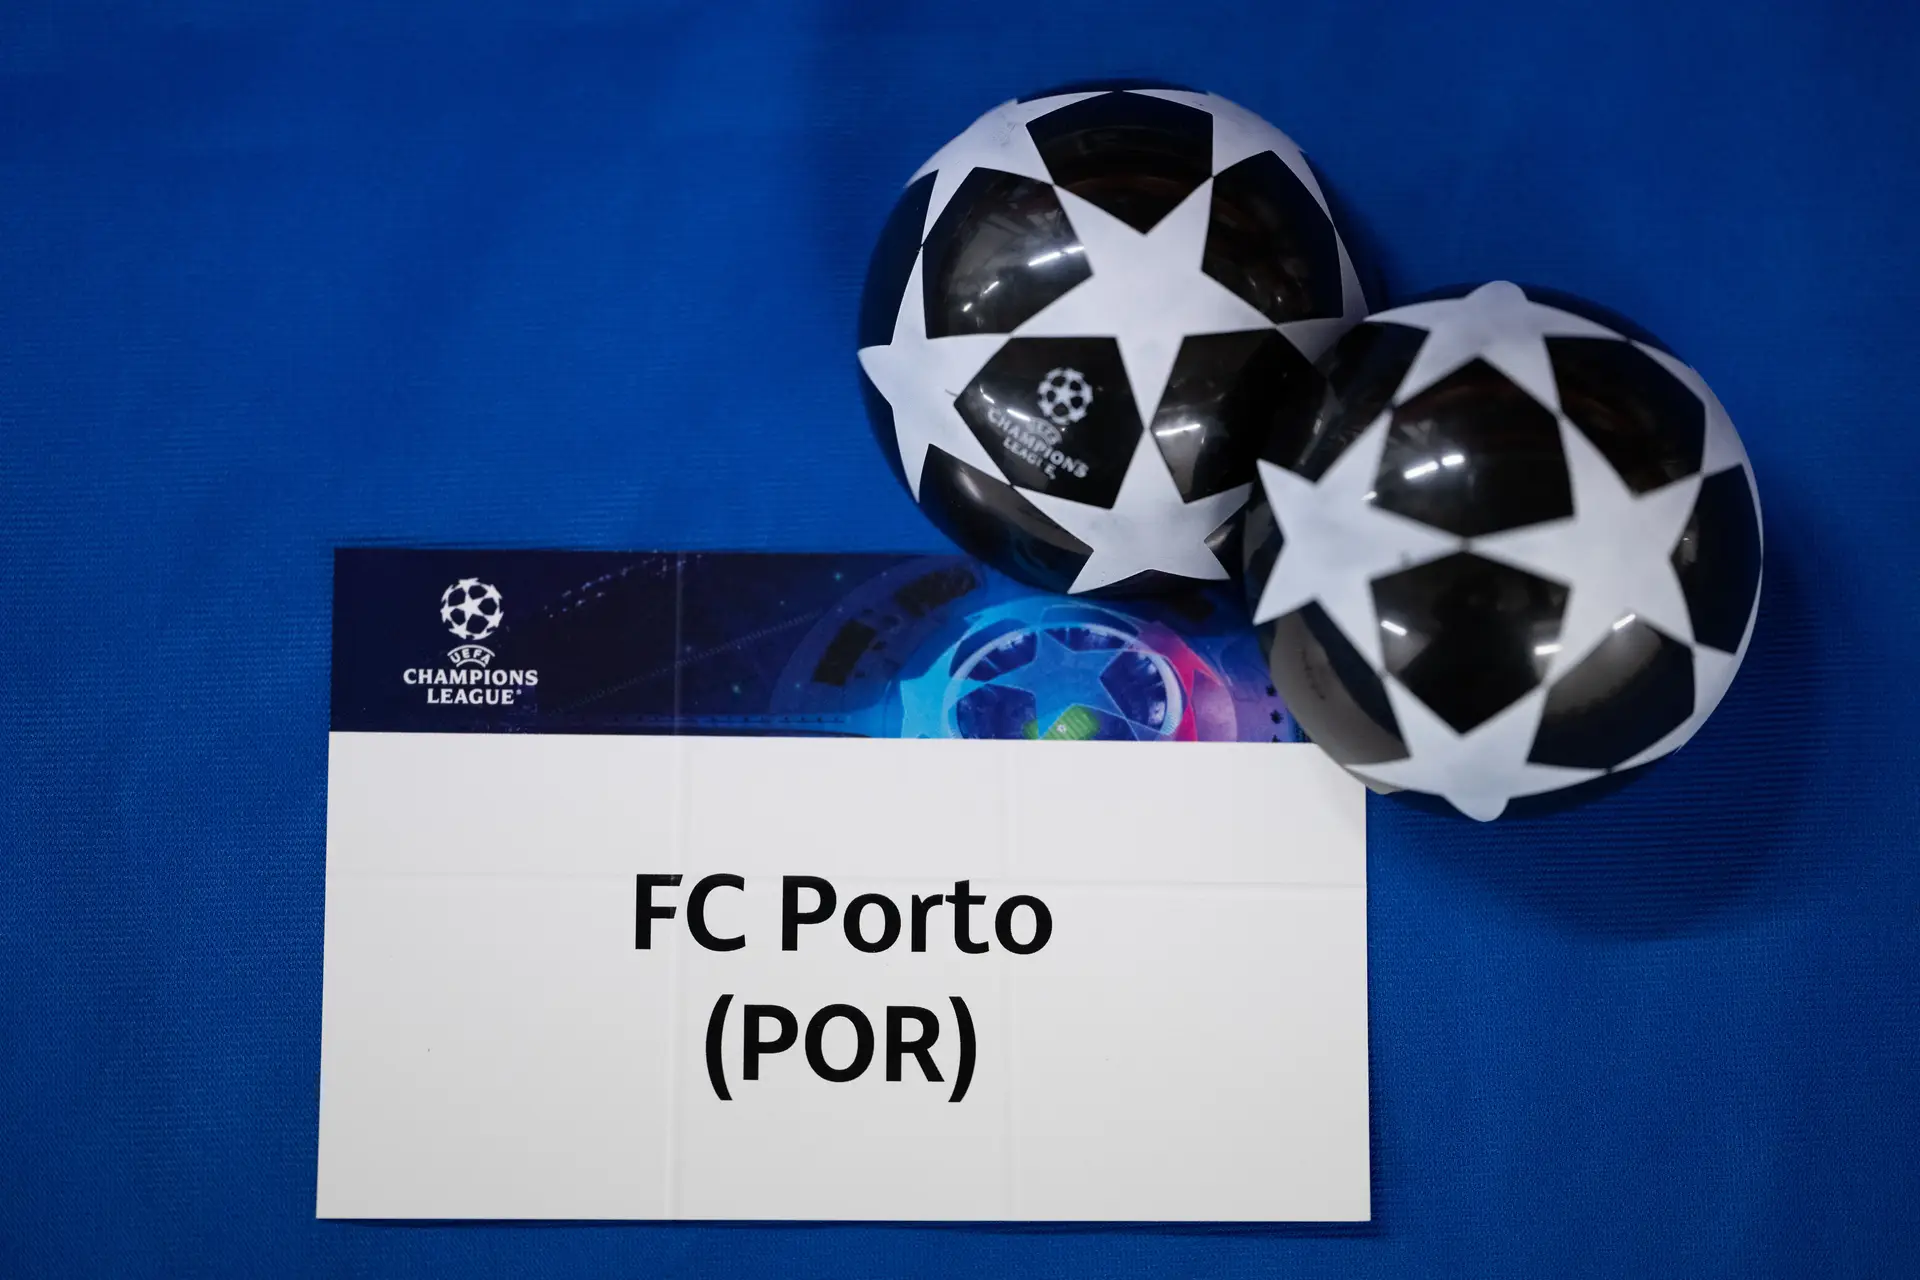 Novo Mundial de clubes em Junho de 2025, com Benfica e FC Porto confirmados, Futebol internacional